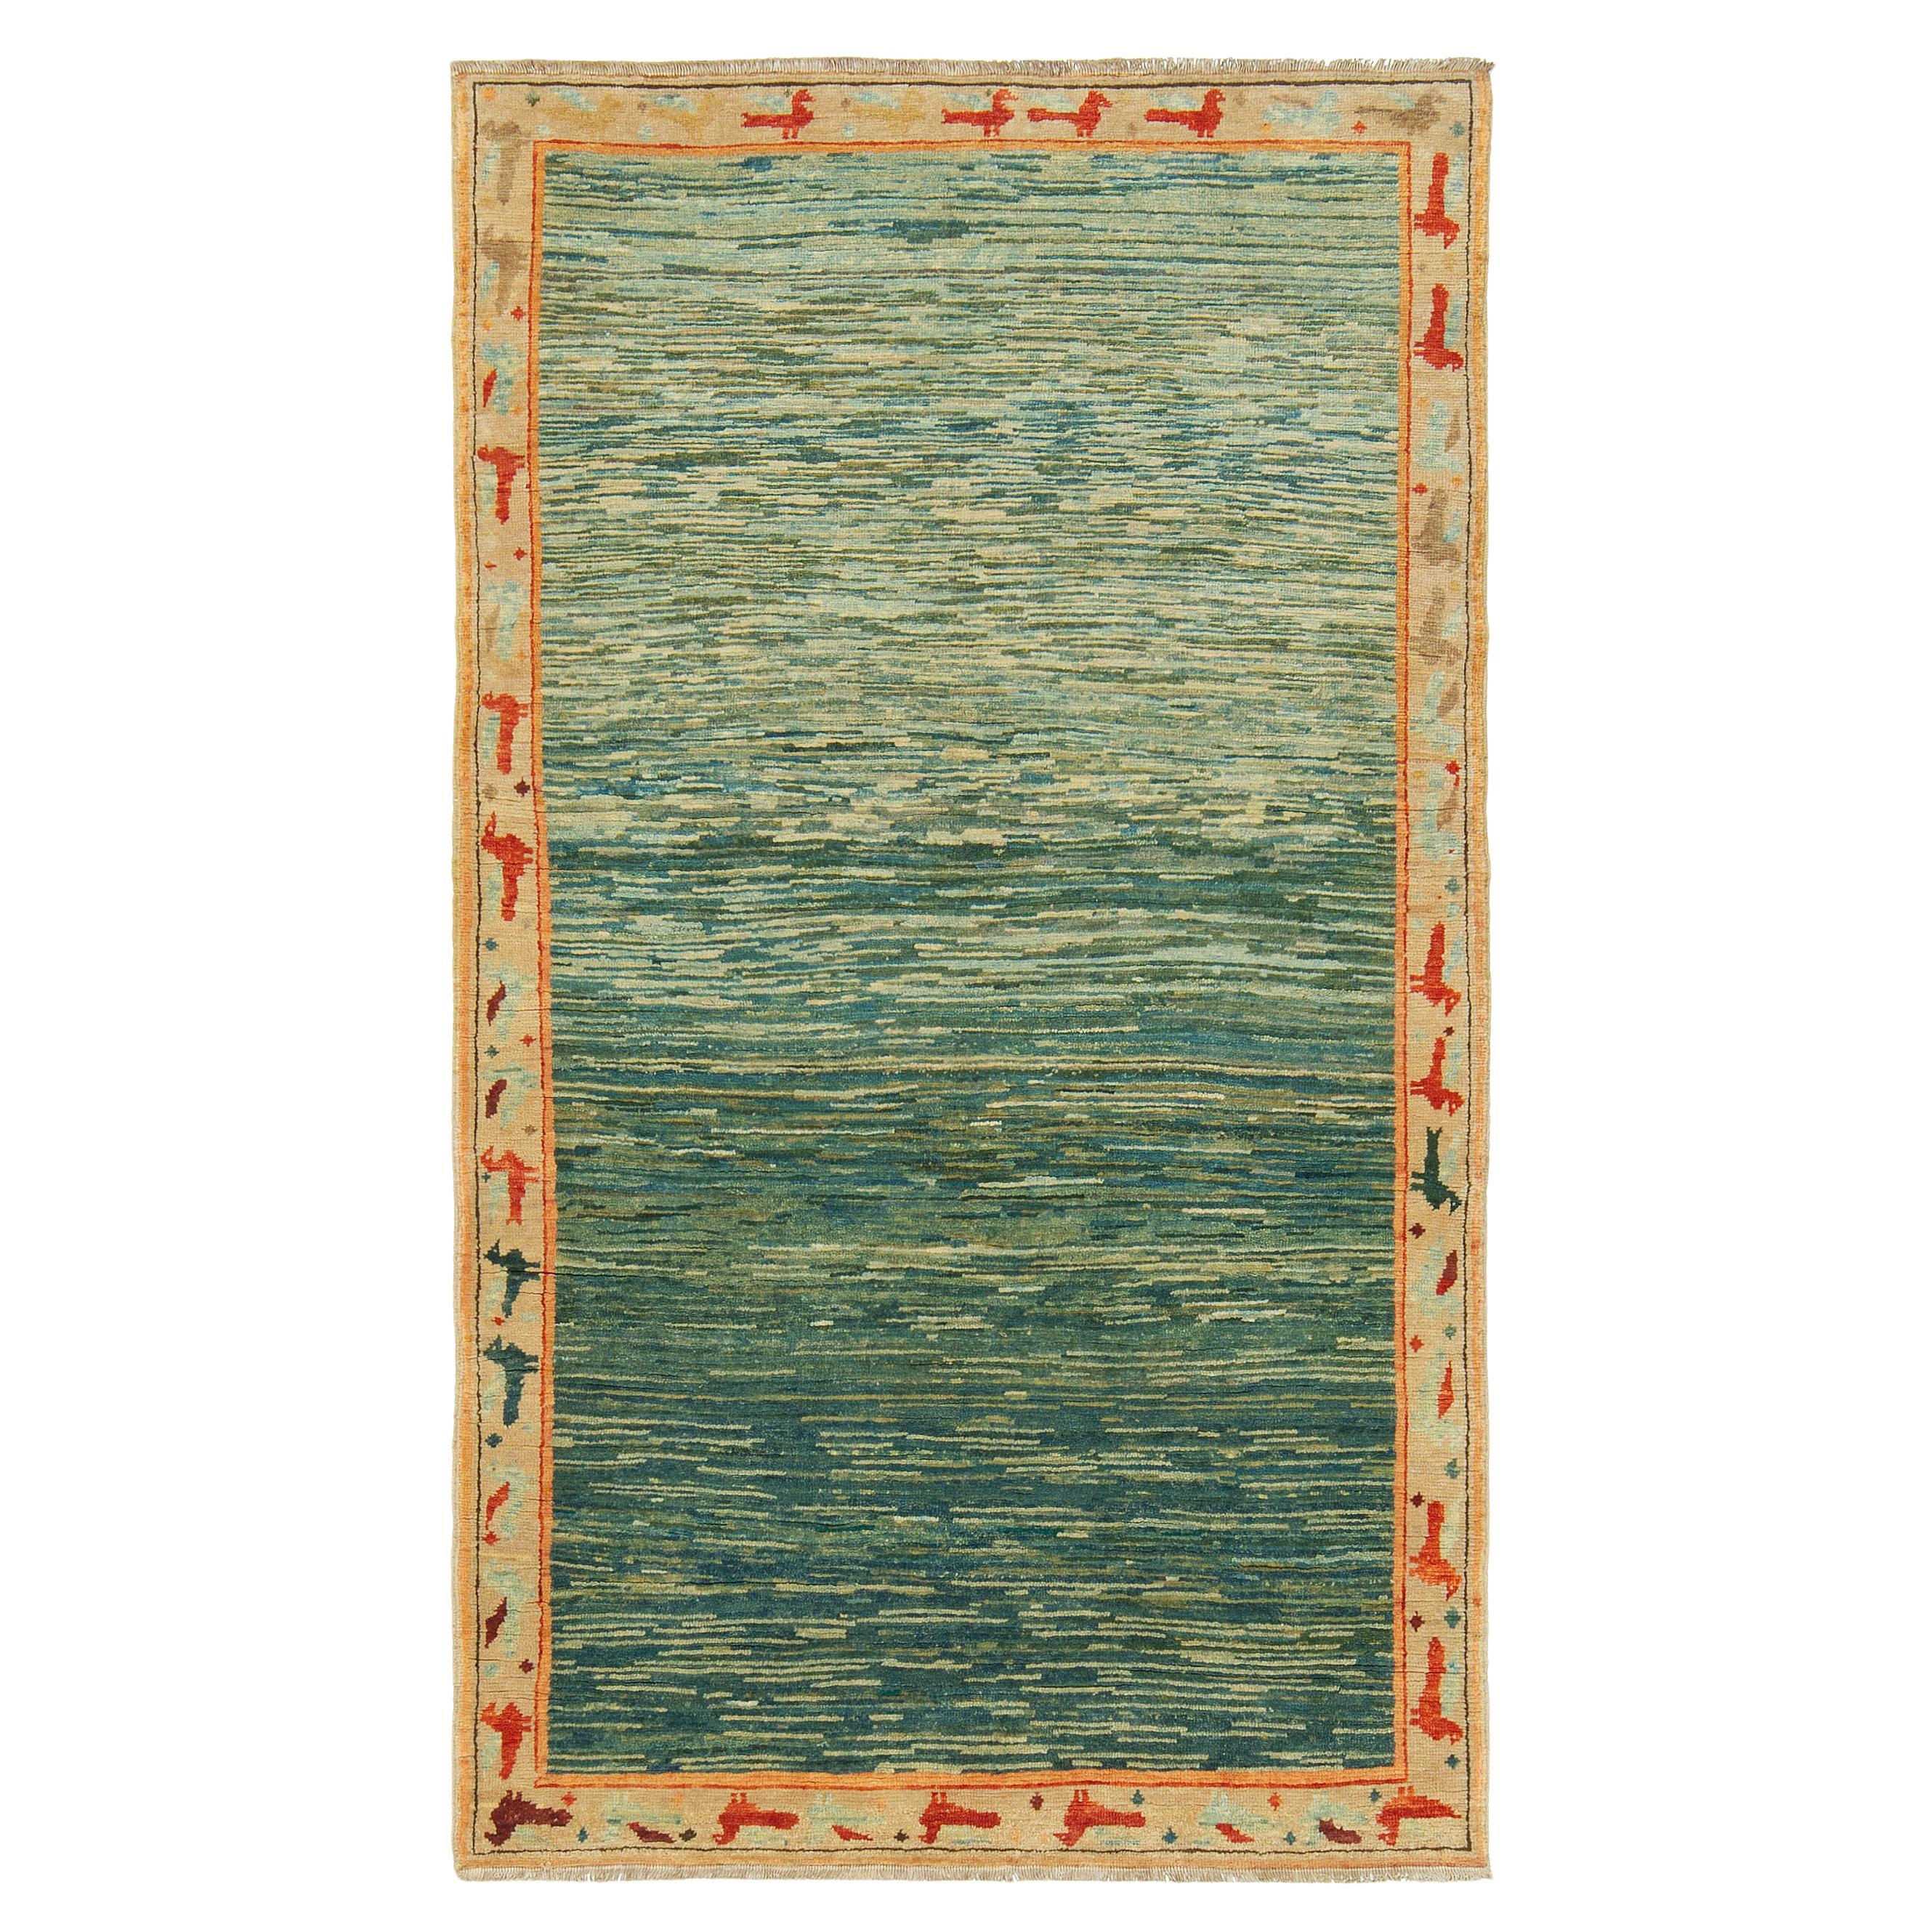 Ararat-Teppiche – The Green Color Teppich – moderner impressionistischer Flussteppich, natürlich gefärbt